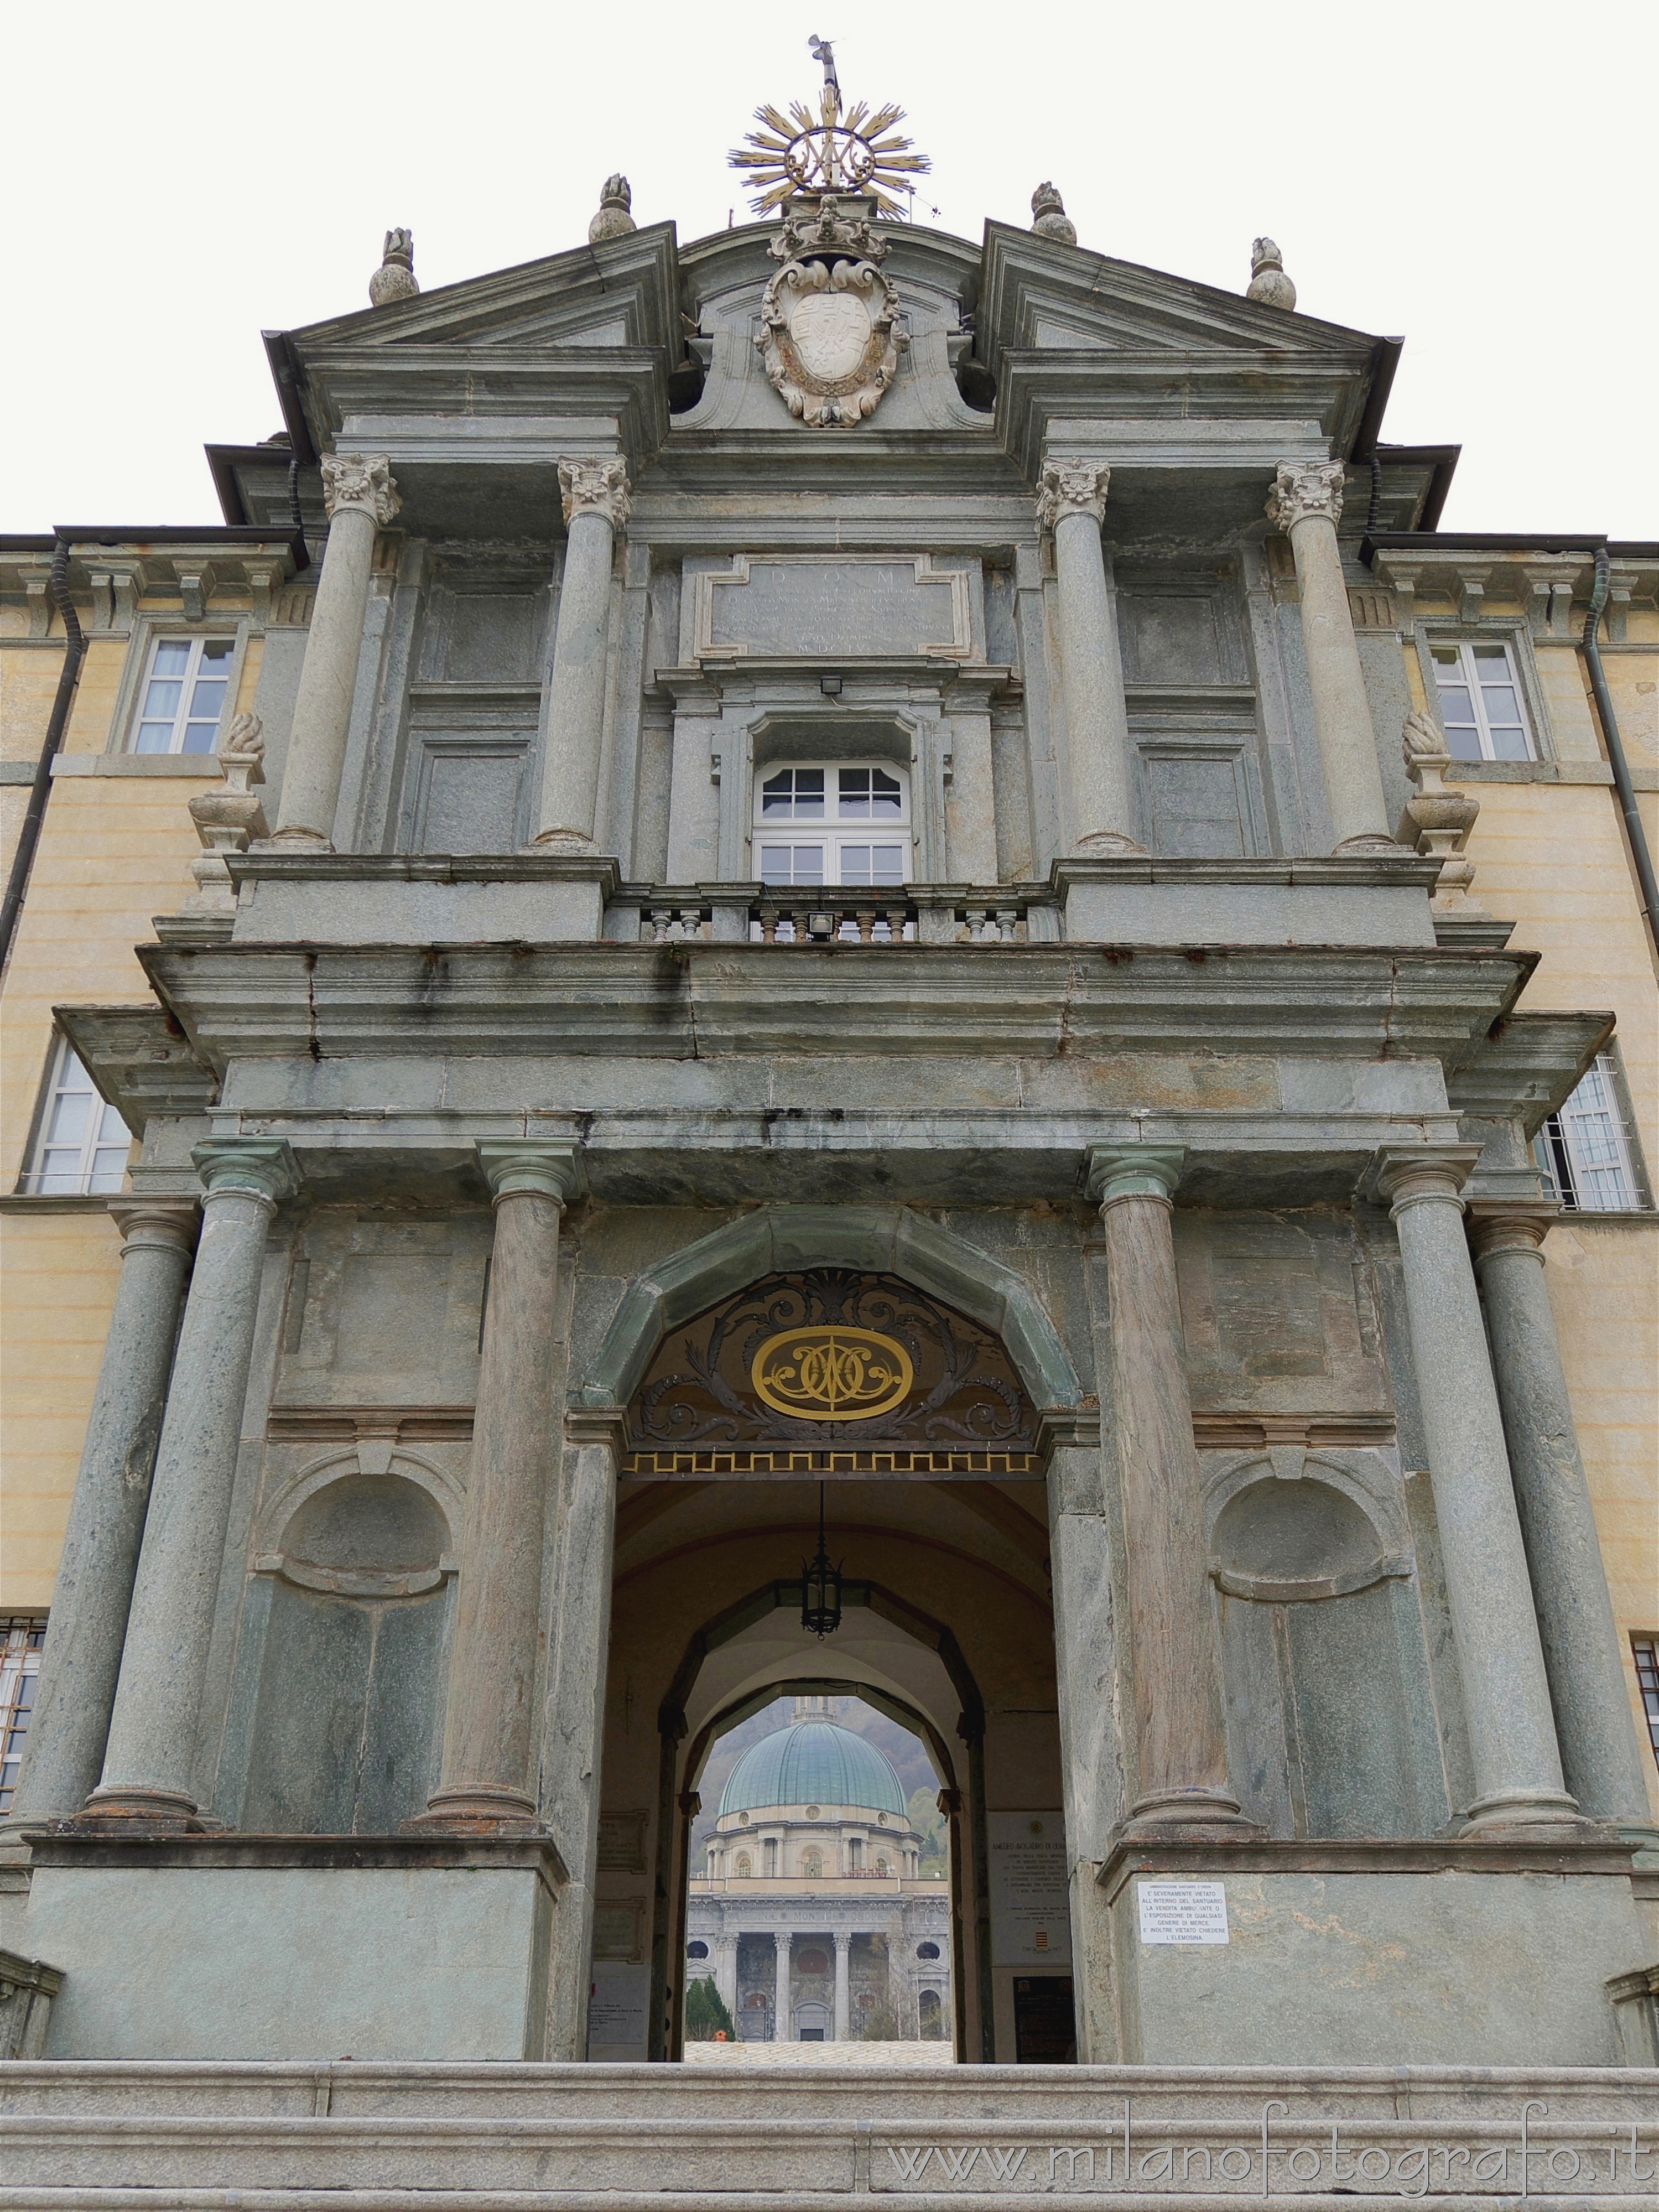 Biella, Italy: Royal Door inside the Sanctuary of Oropa - Biella, Italy